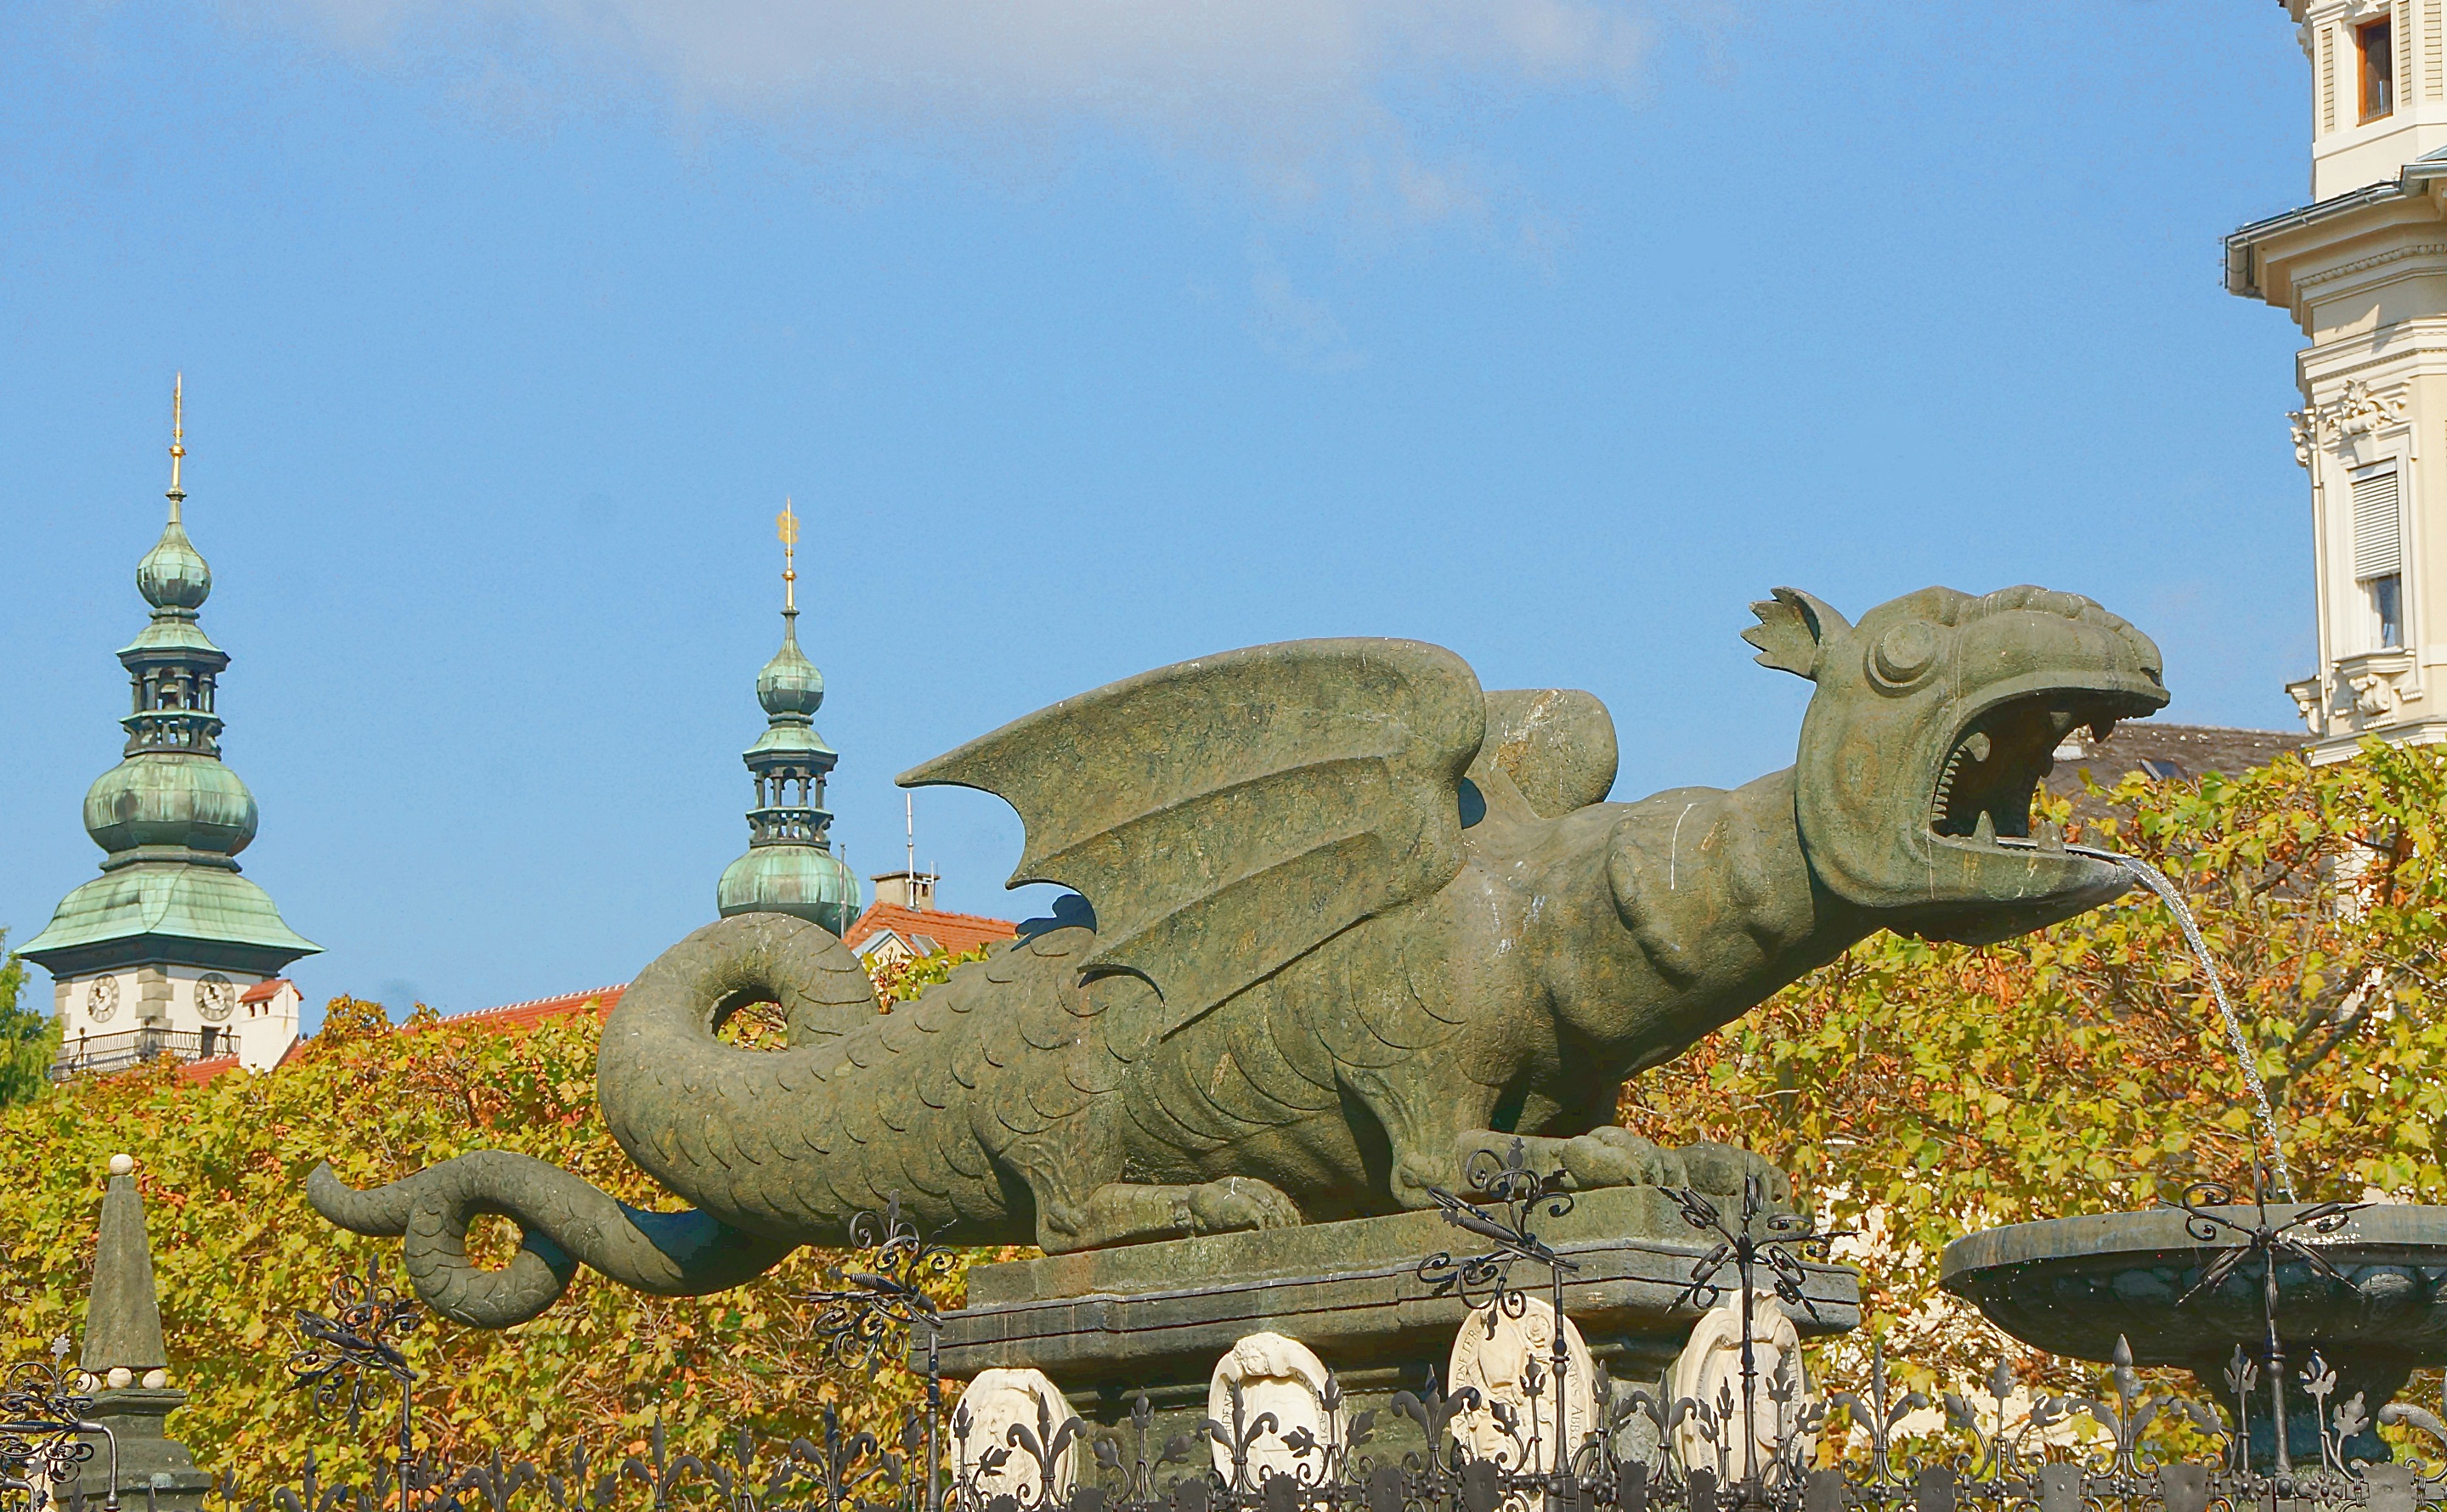 Фонтан Дракон на площади в Клагенфурте. Фото Морошкина В.В.